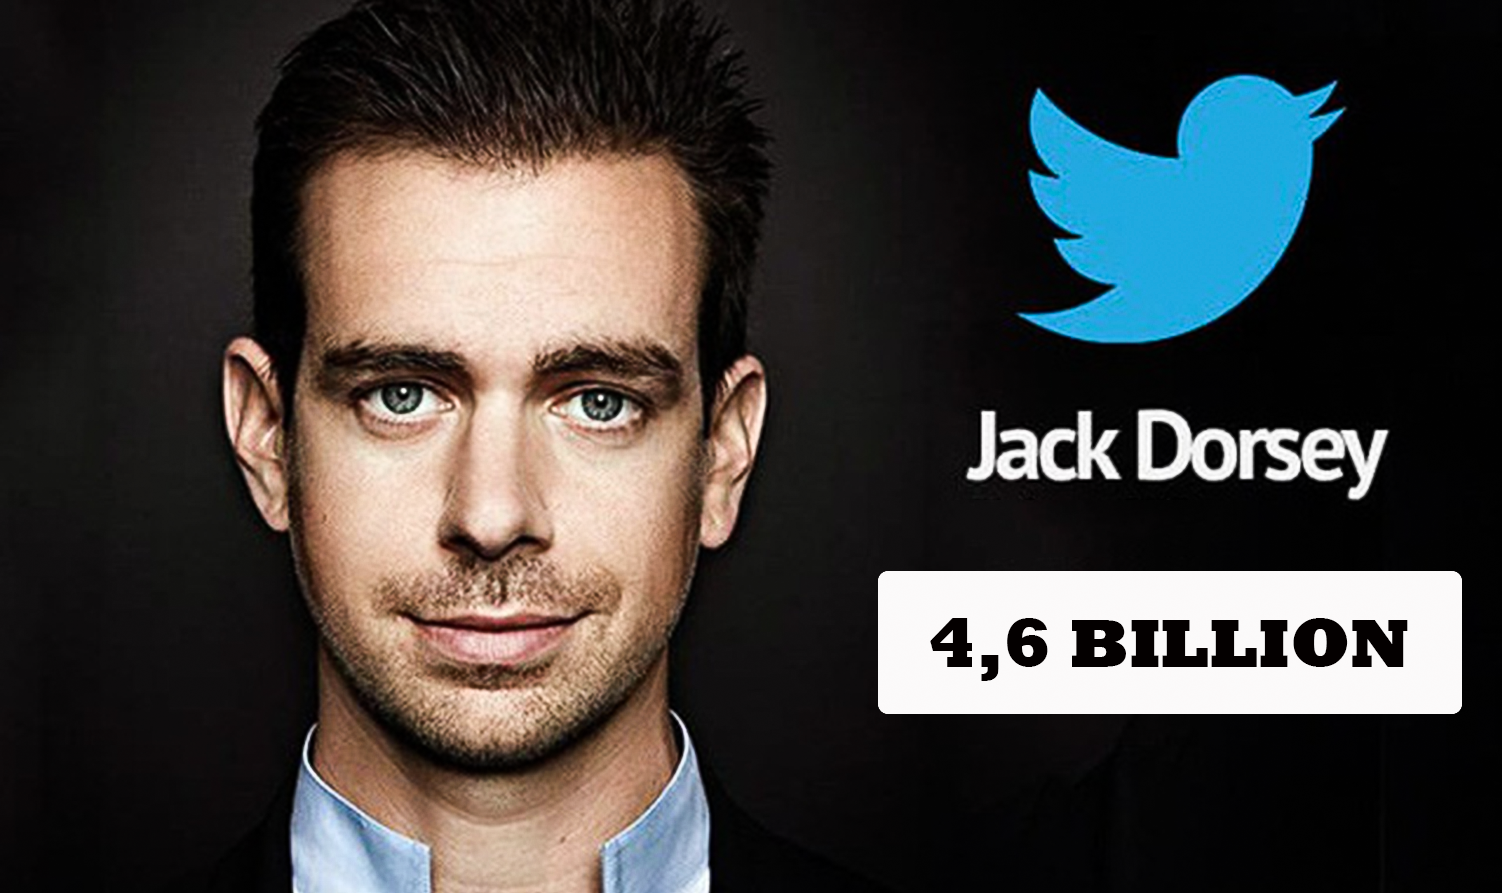 Tính đến ngày 9.3, cha đẻ Twitter sở hữu khối tài sản trị giá 4,6 tỉ USD (theo Forbes).